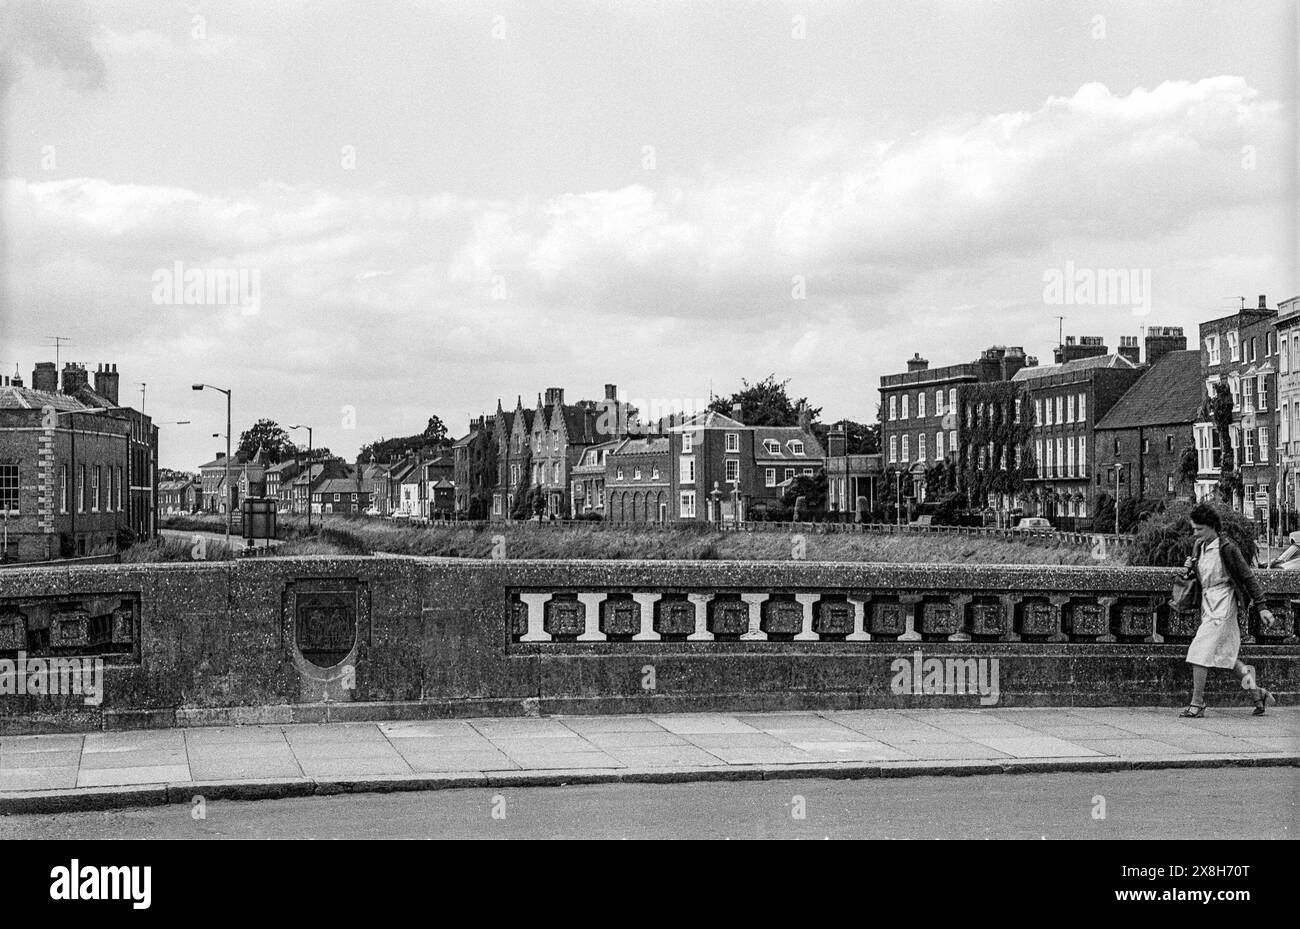 Fotografia d'archivio in bianco e nero dei primi anni '1980 del ponte sul fiume Nene a Wisbech, Cambridgeshire. Foto Stock